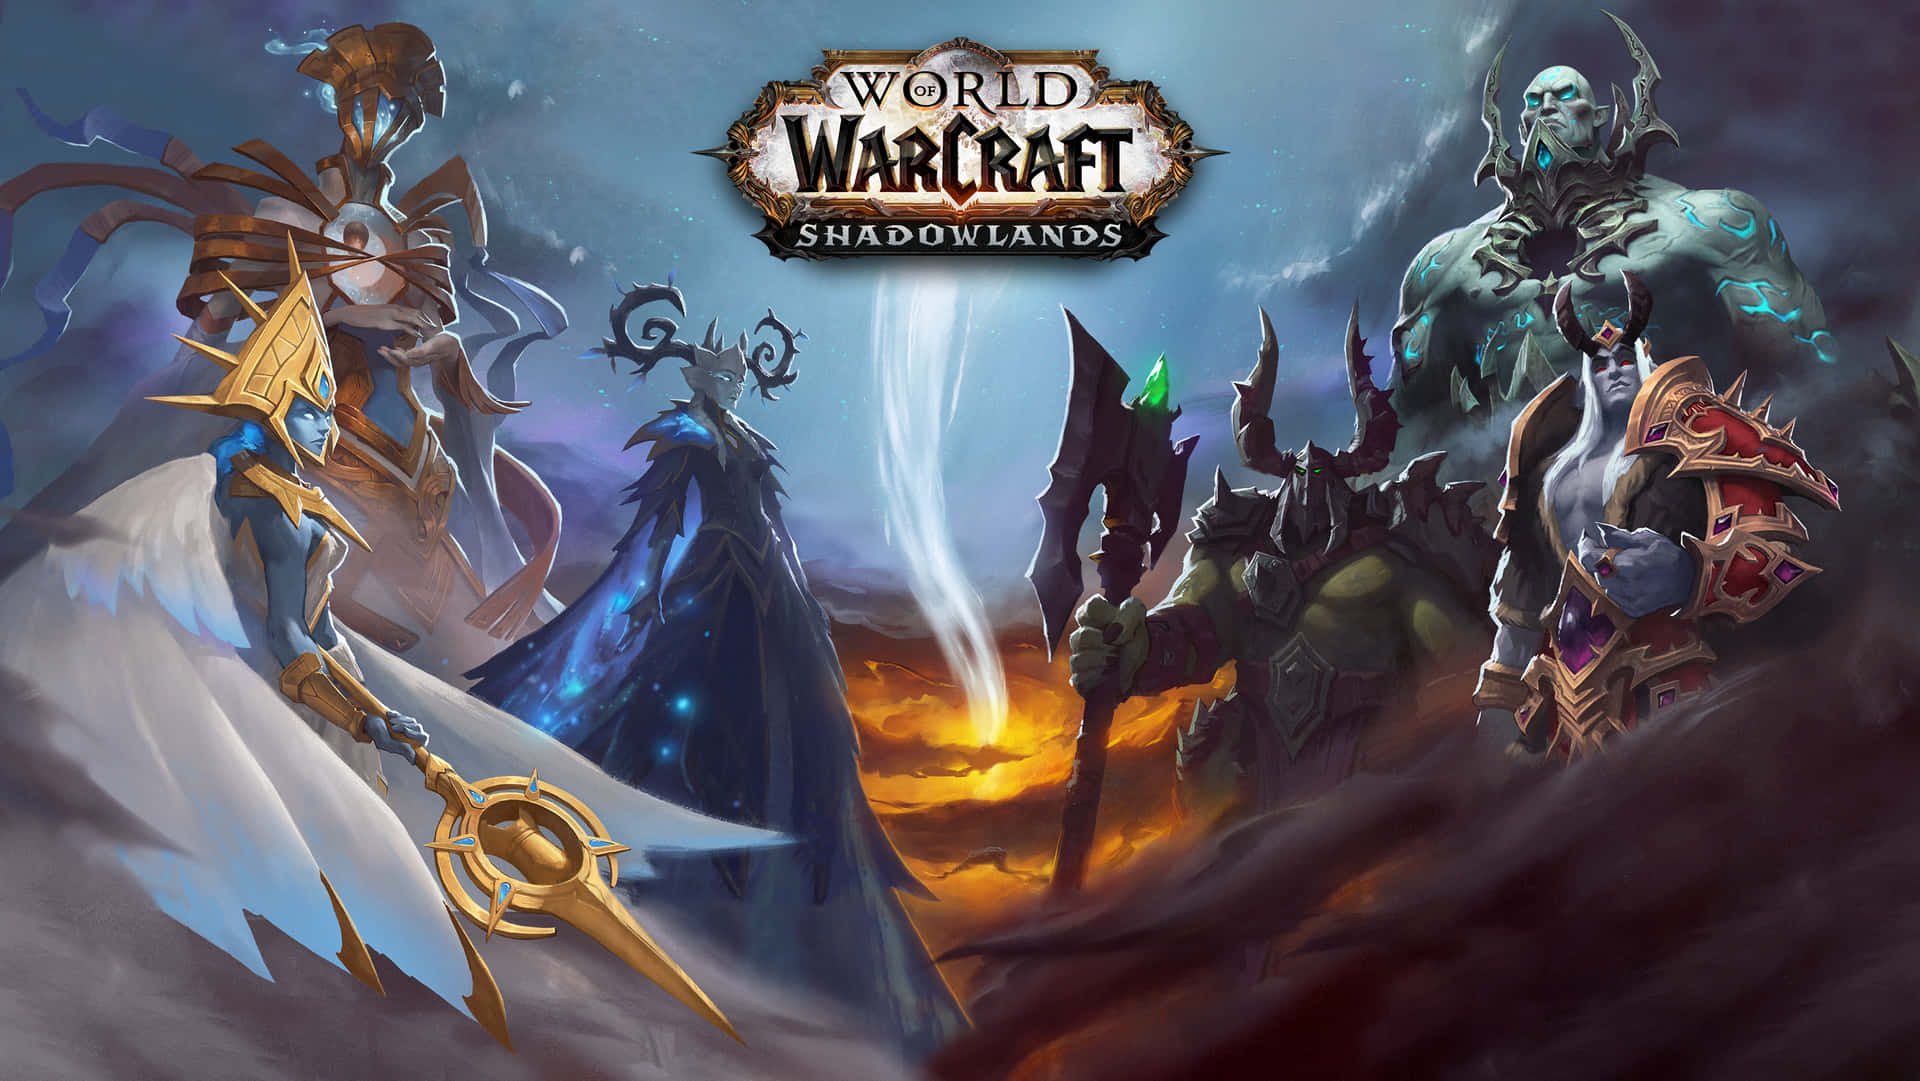 Undersøg den magiske verden i Warcraft Shadowlands i detaljerede grafikker. Wallpaper